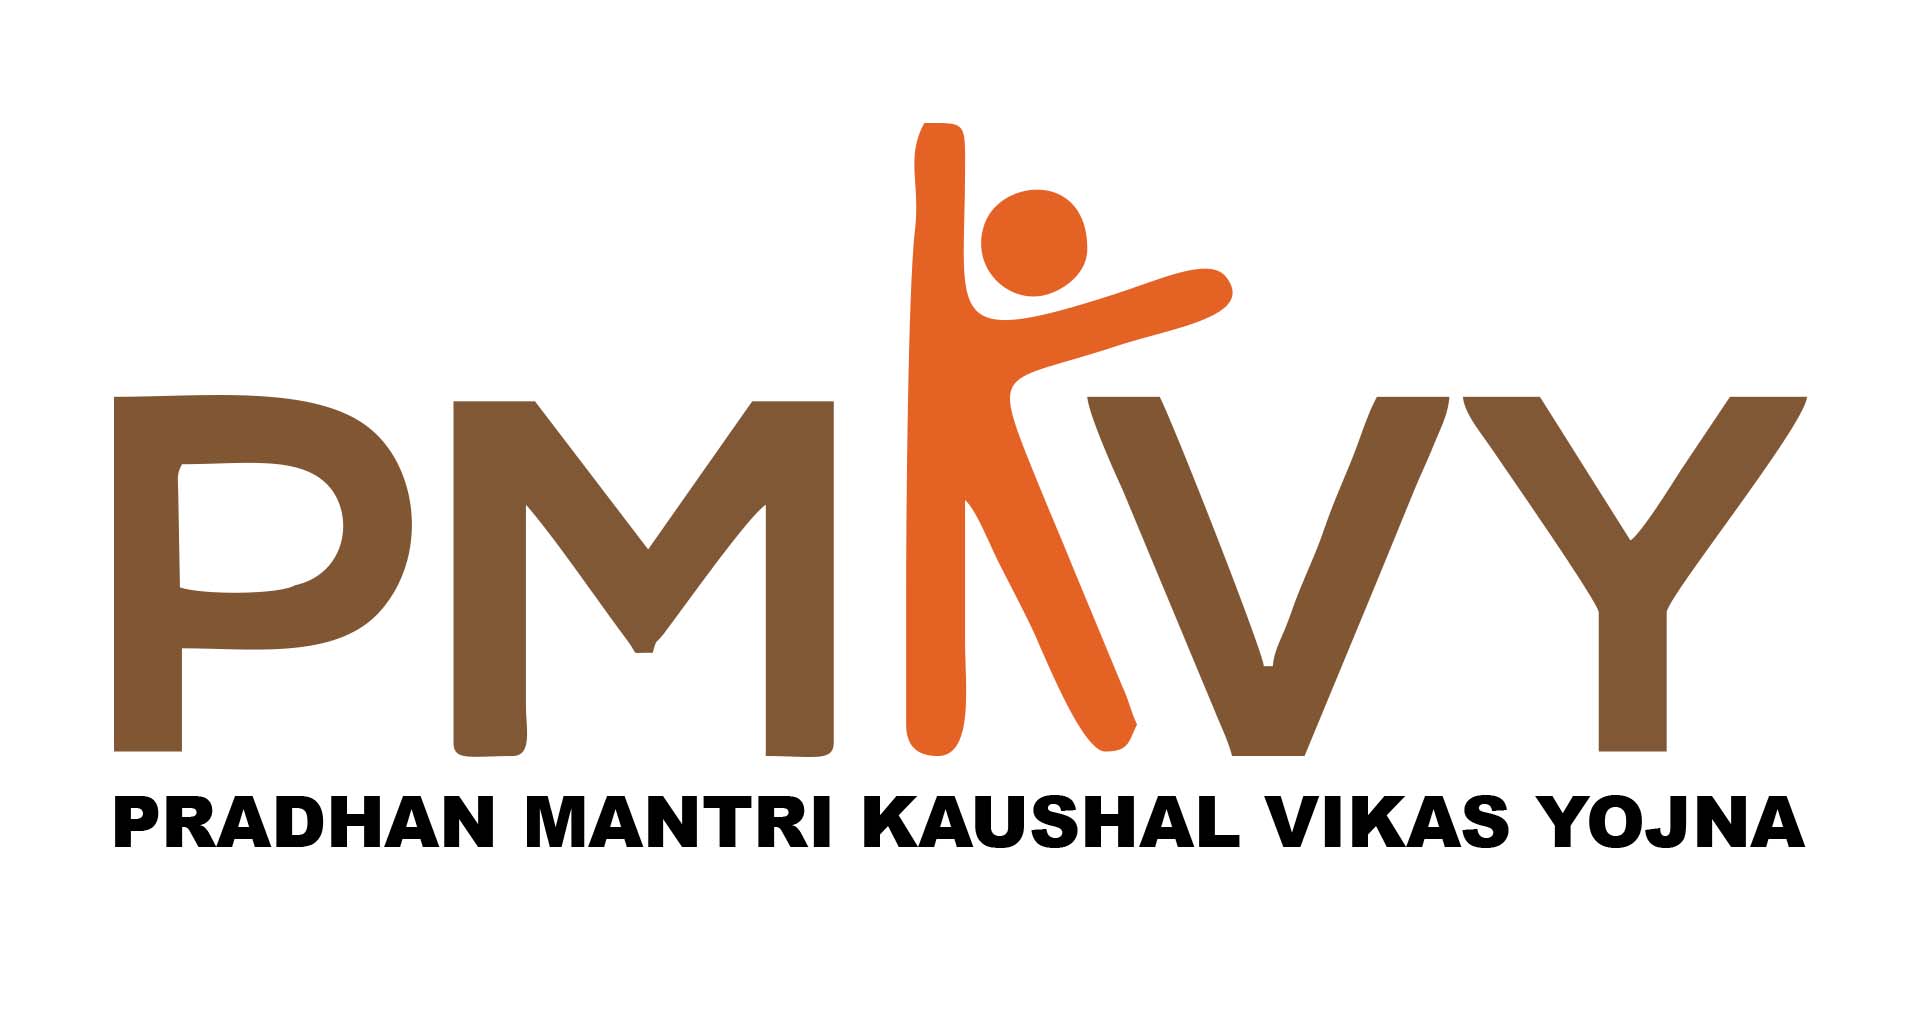 PMKVY Logo